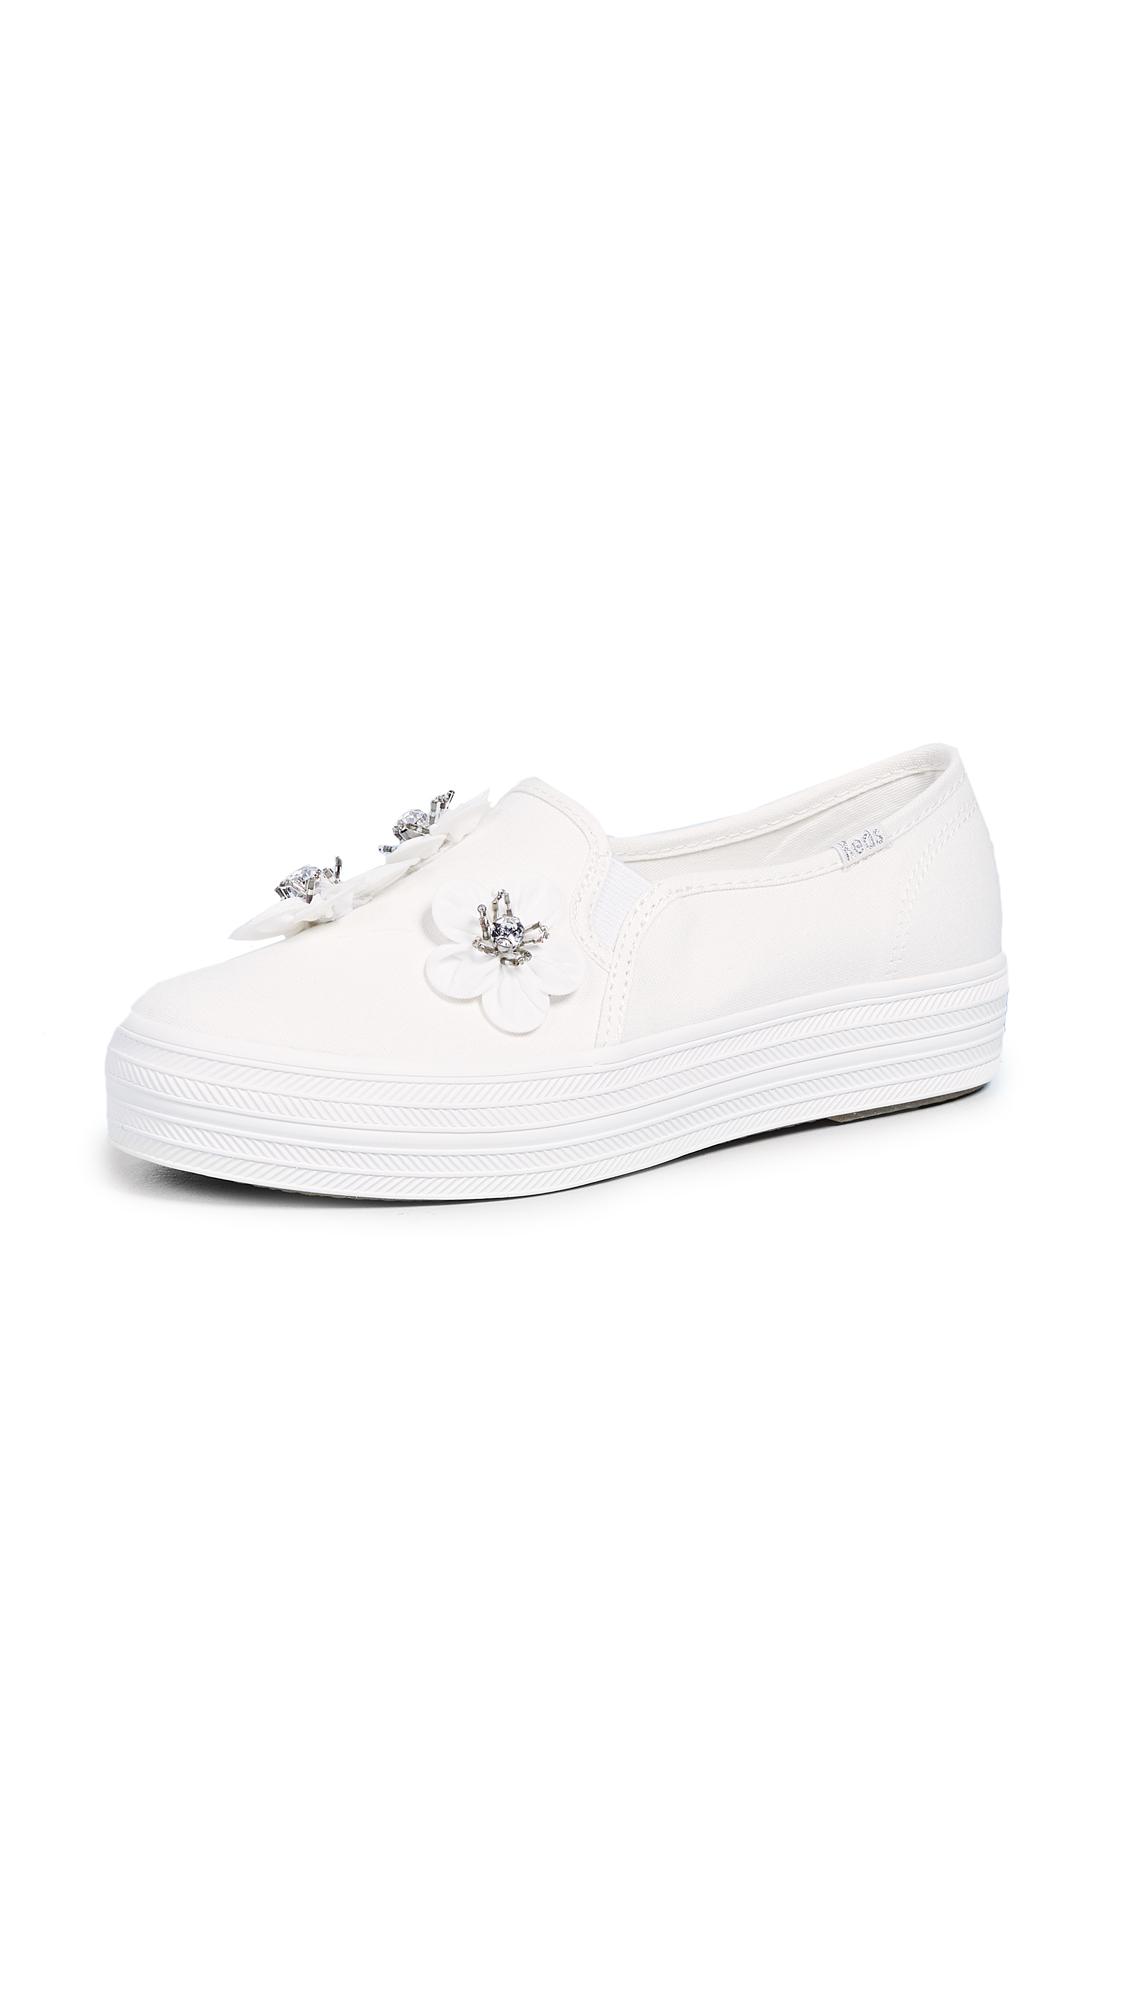 Keds X Kate Spade Triple Decker Flowers Slip On Sneakers in White | Lyst